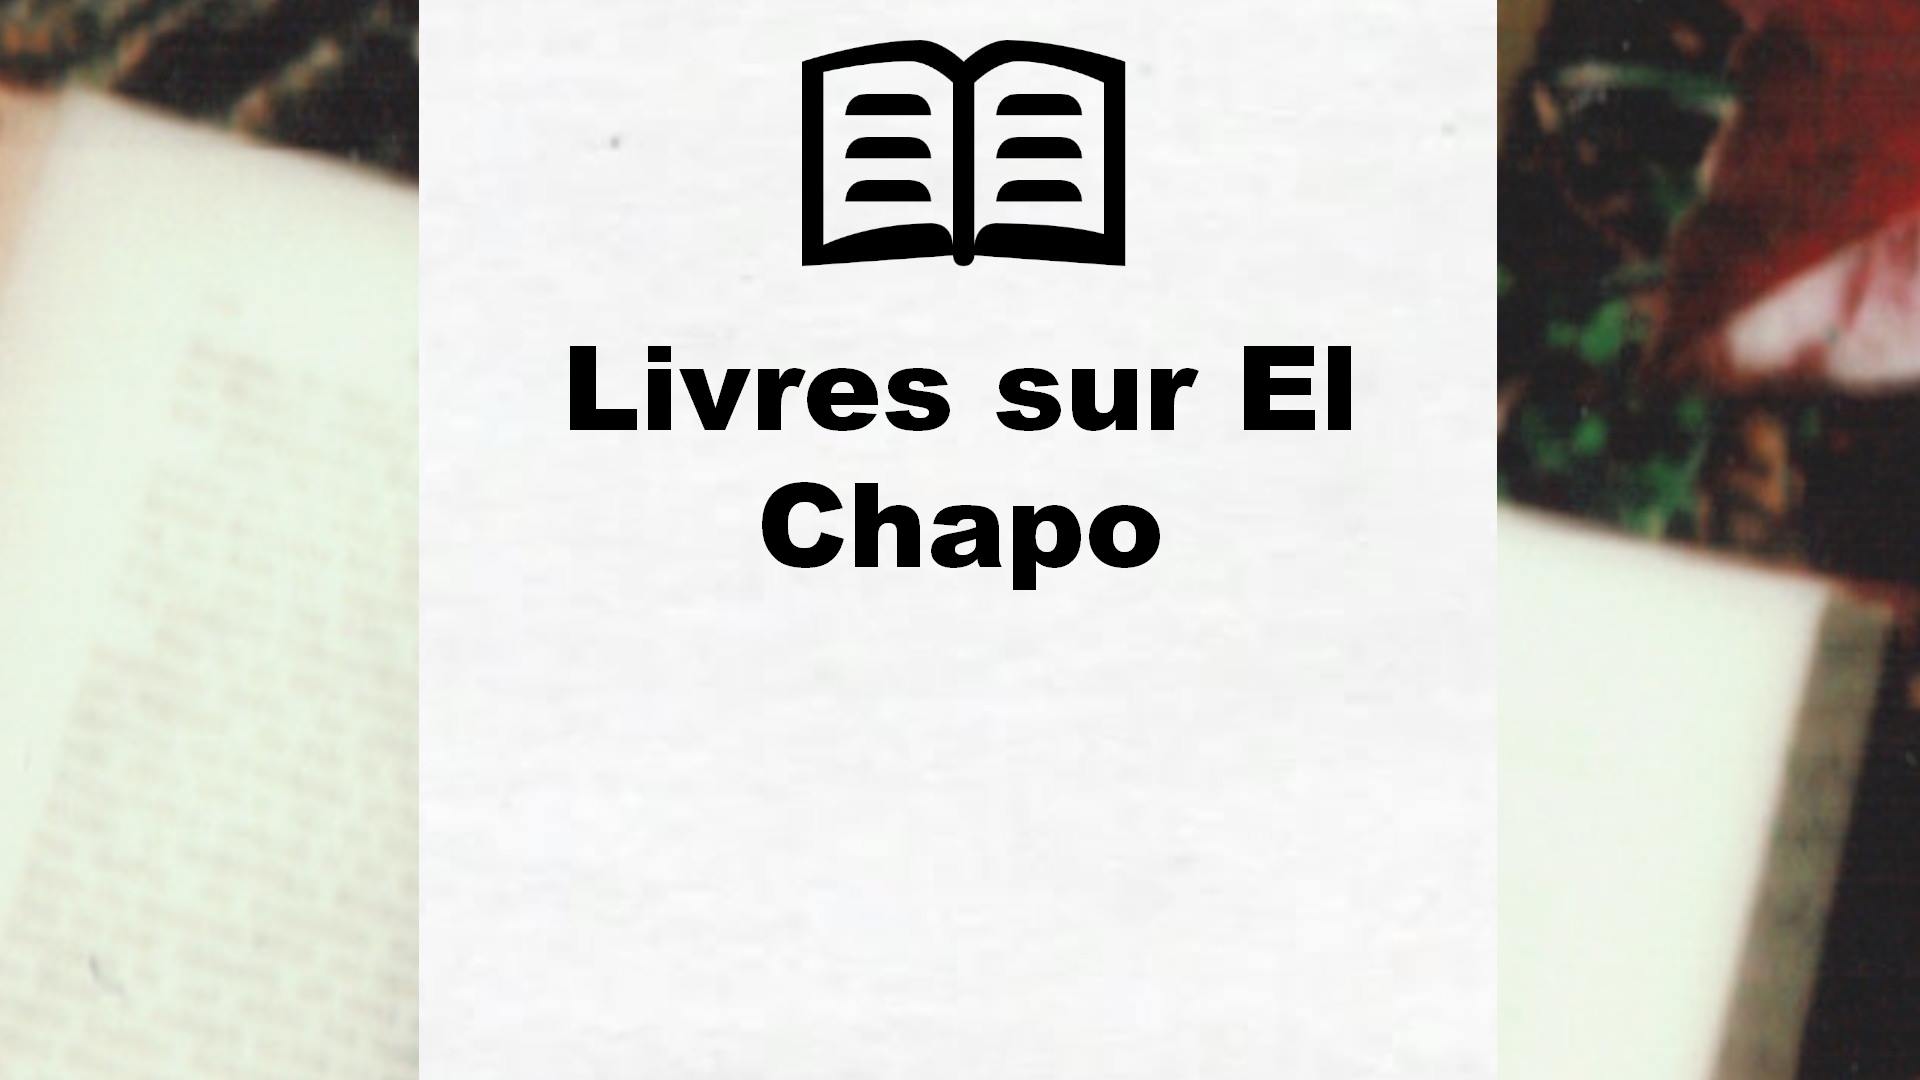 Livres sur El Chapo